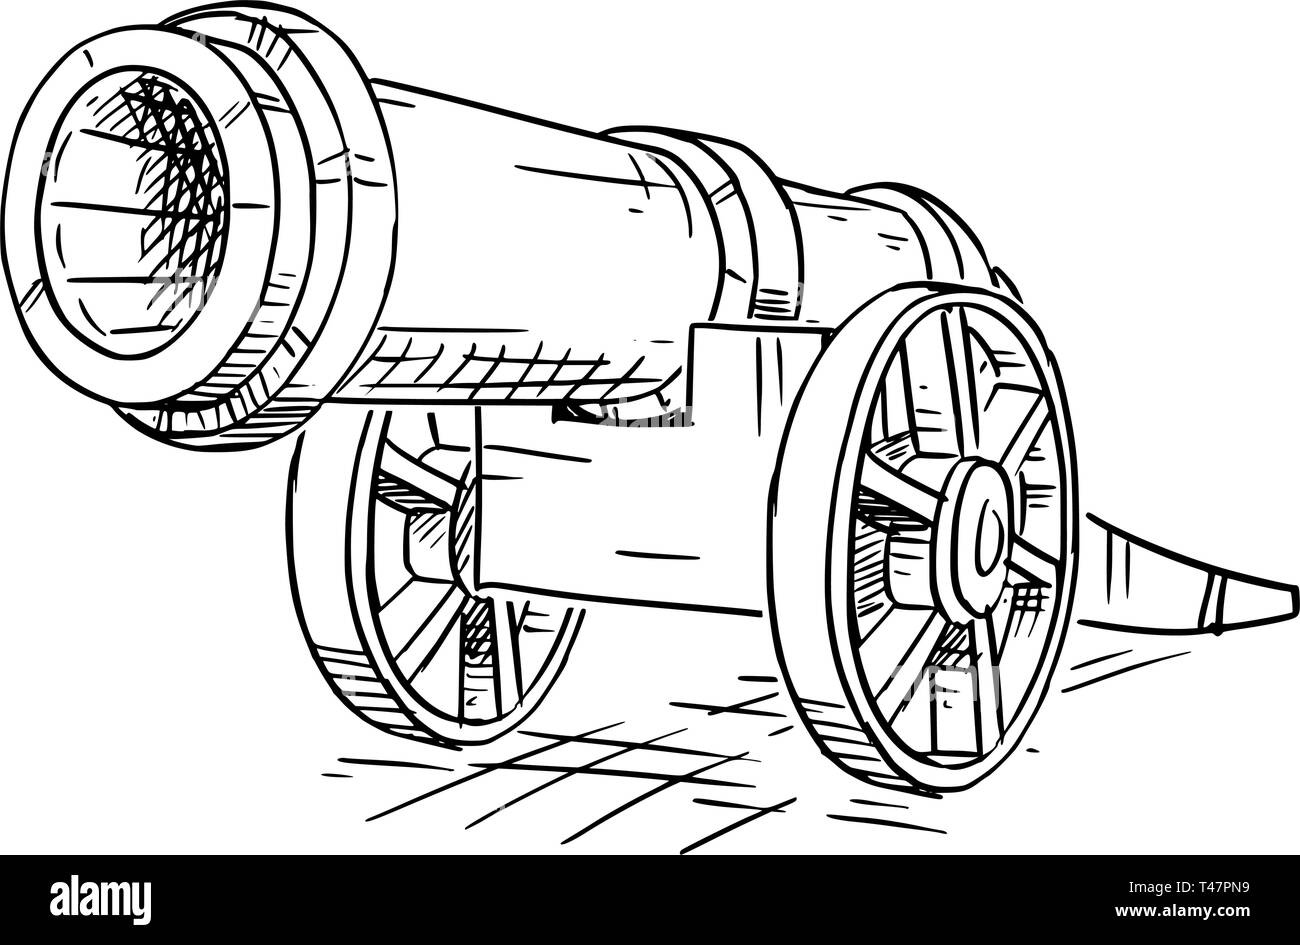 Illustration de dessin animé ou de vieux meubles anciens ou de l'artillerie vintage Cannon. Illustration de Vecteur